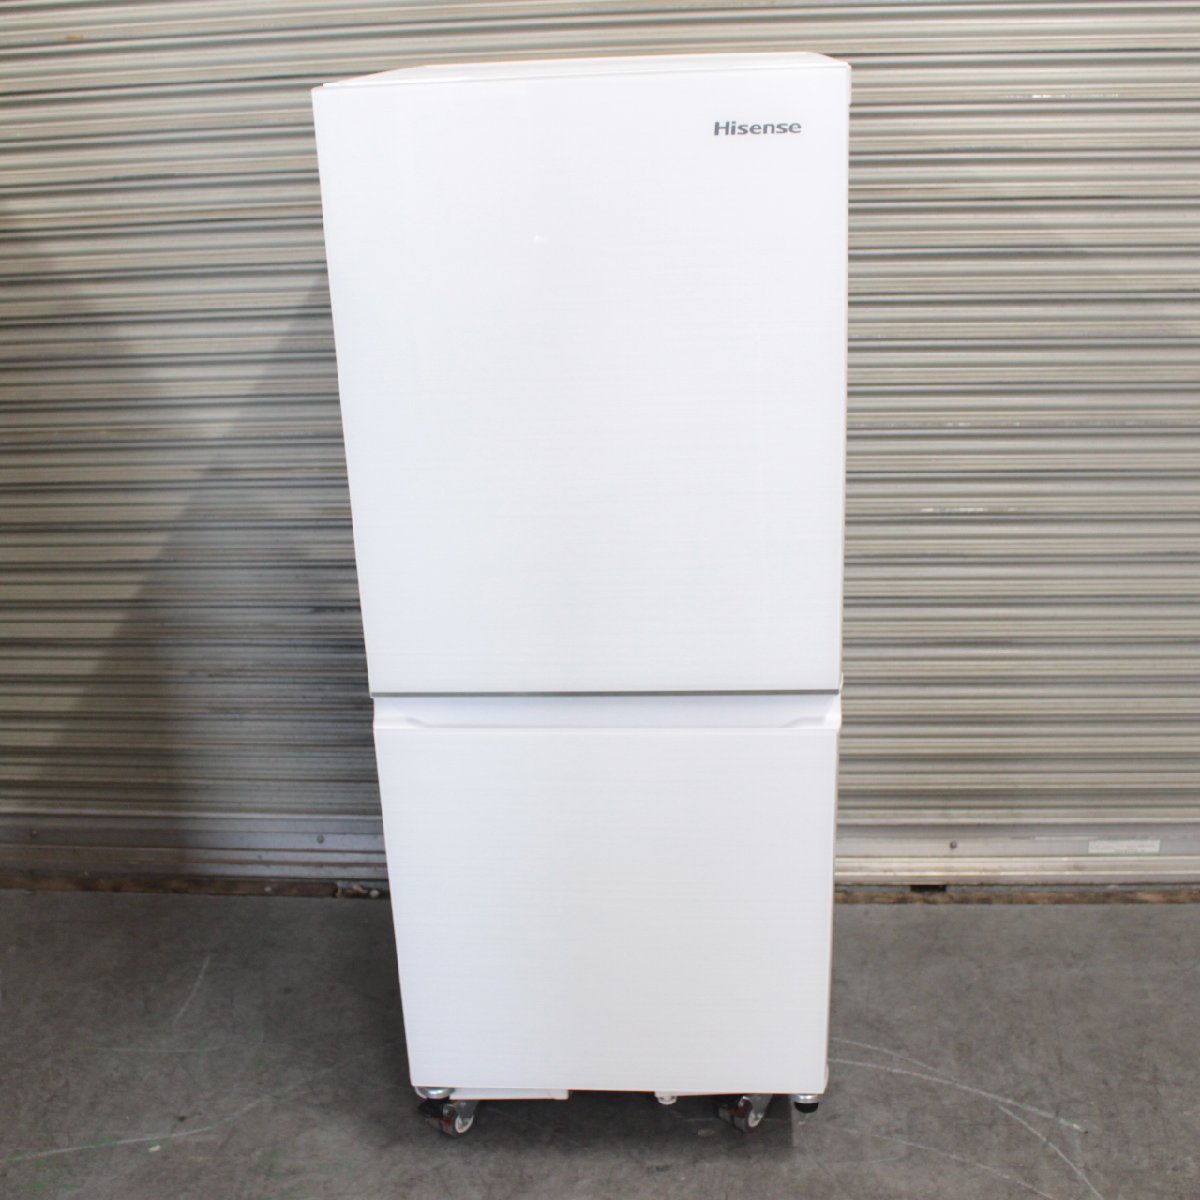 東京都世田谷区にて ハイセンス 冷蔵庫 HR-G13C 2022年製 を出張買取させて頂きました。